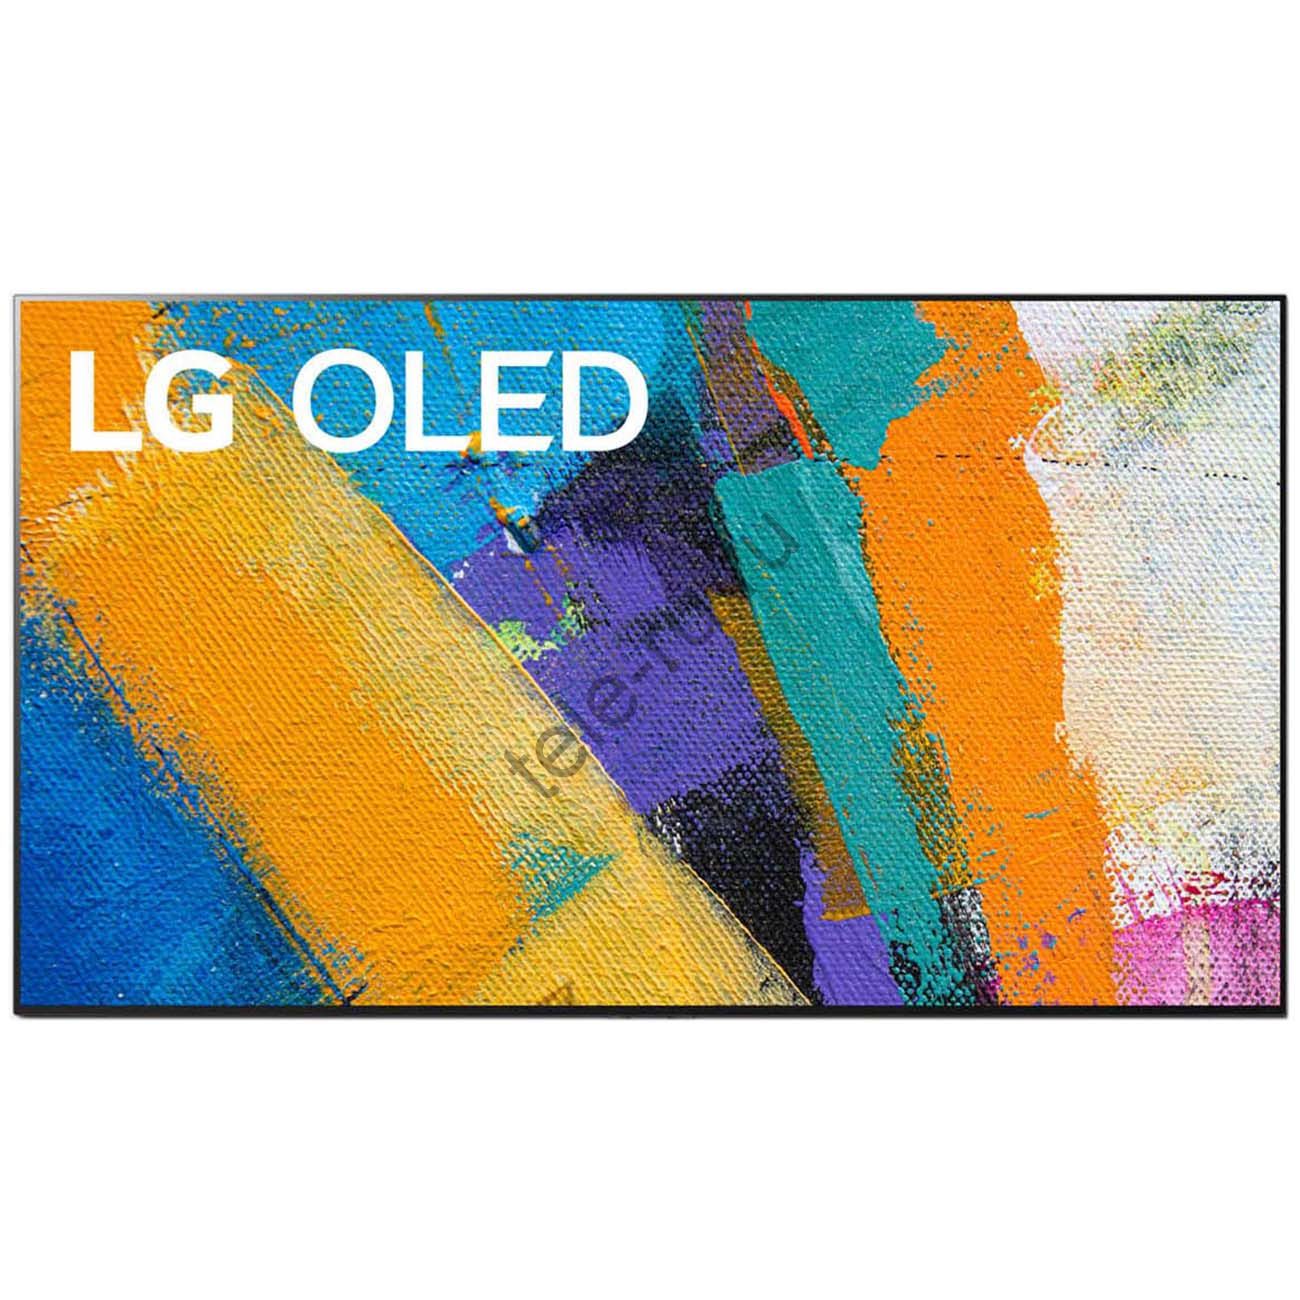 Телевизор LG OLED77GX